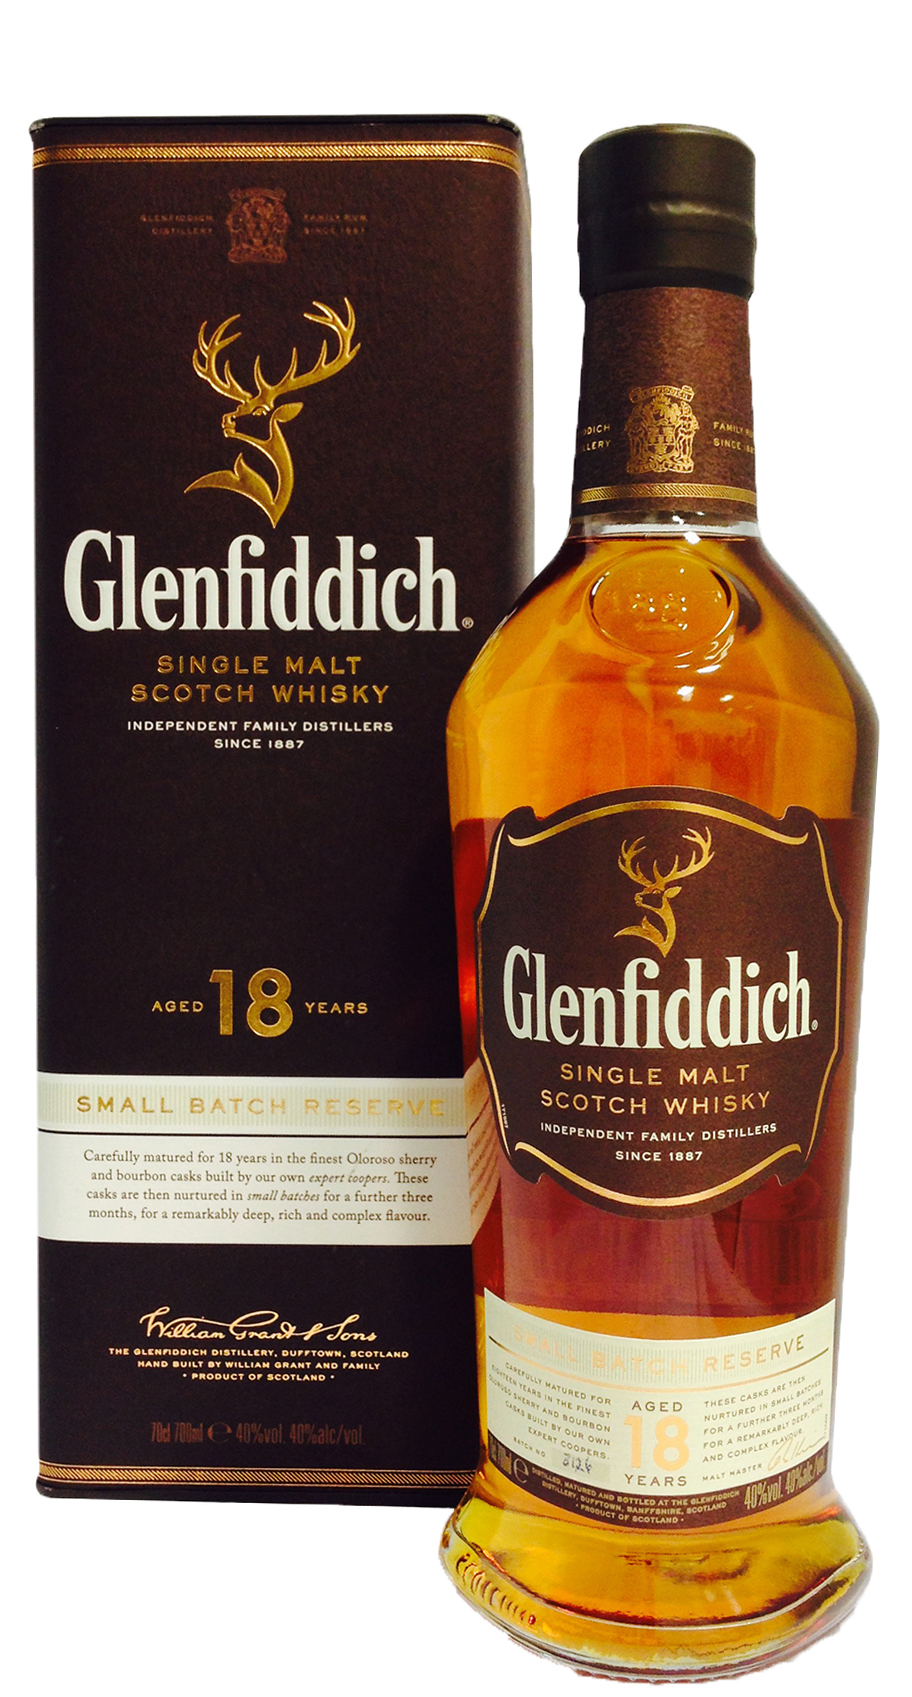 Glenfiddich 18 Year Old Single Malt